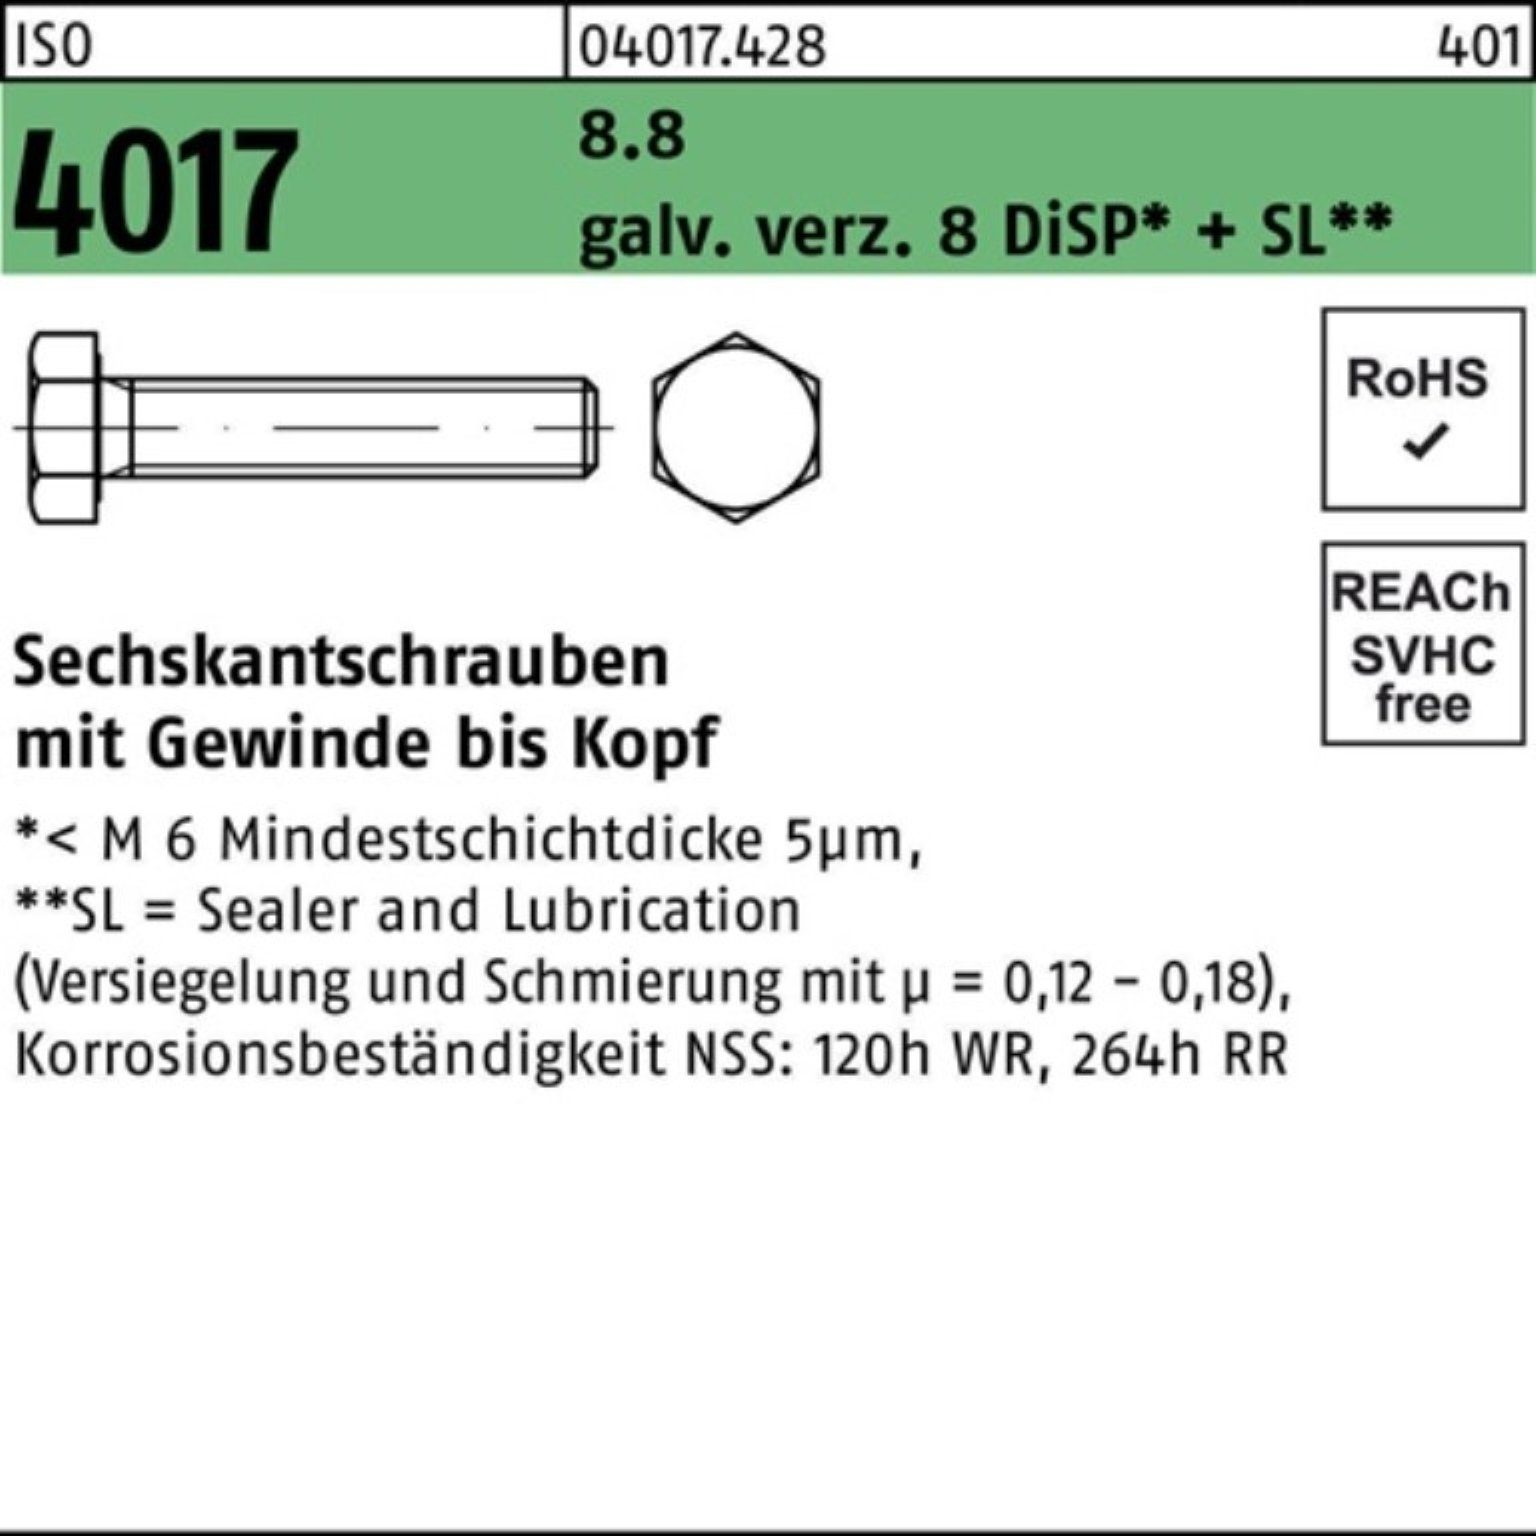 Bufab Sechskantschraube 80 8.8 DiSP+ 200er Sechskantschraube VG ISO M8x Pack galv.verz. 8 4017